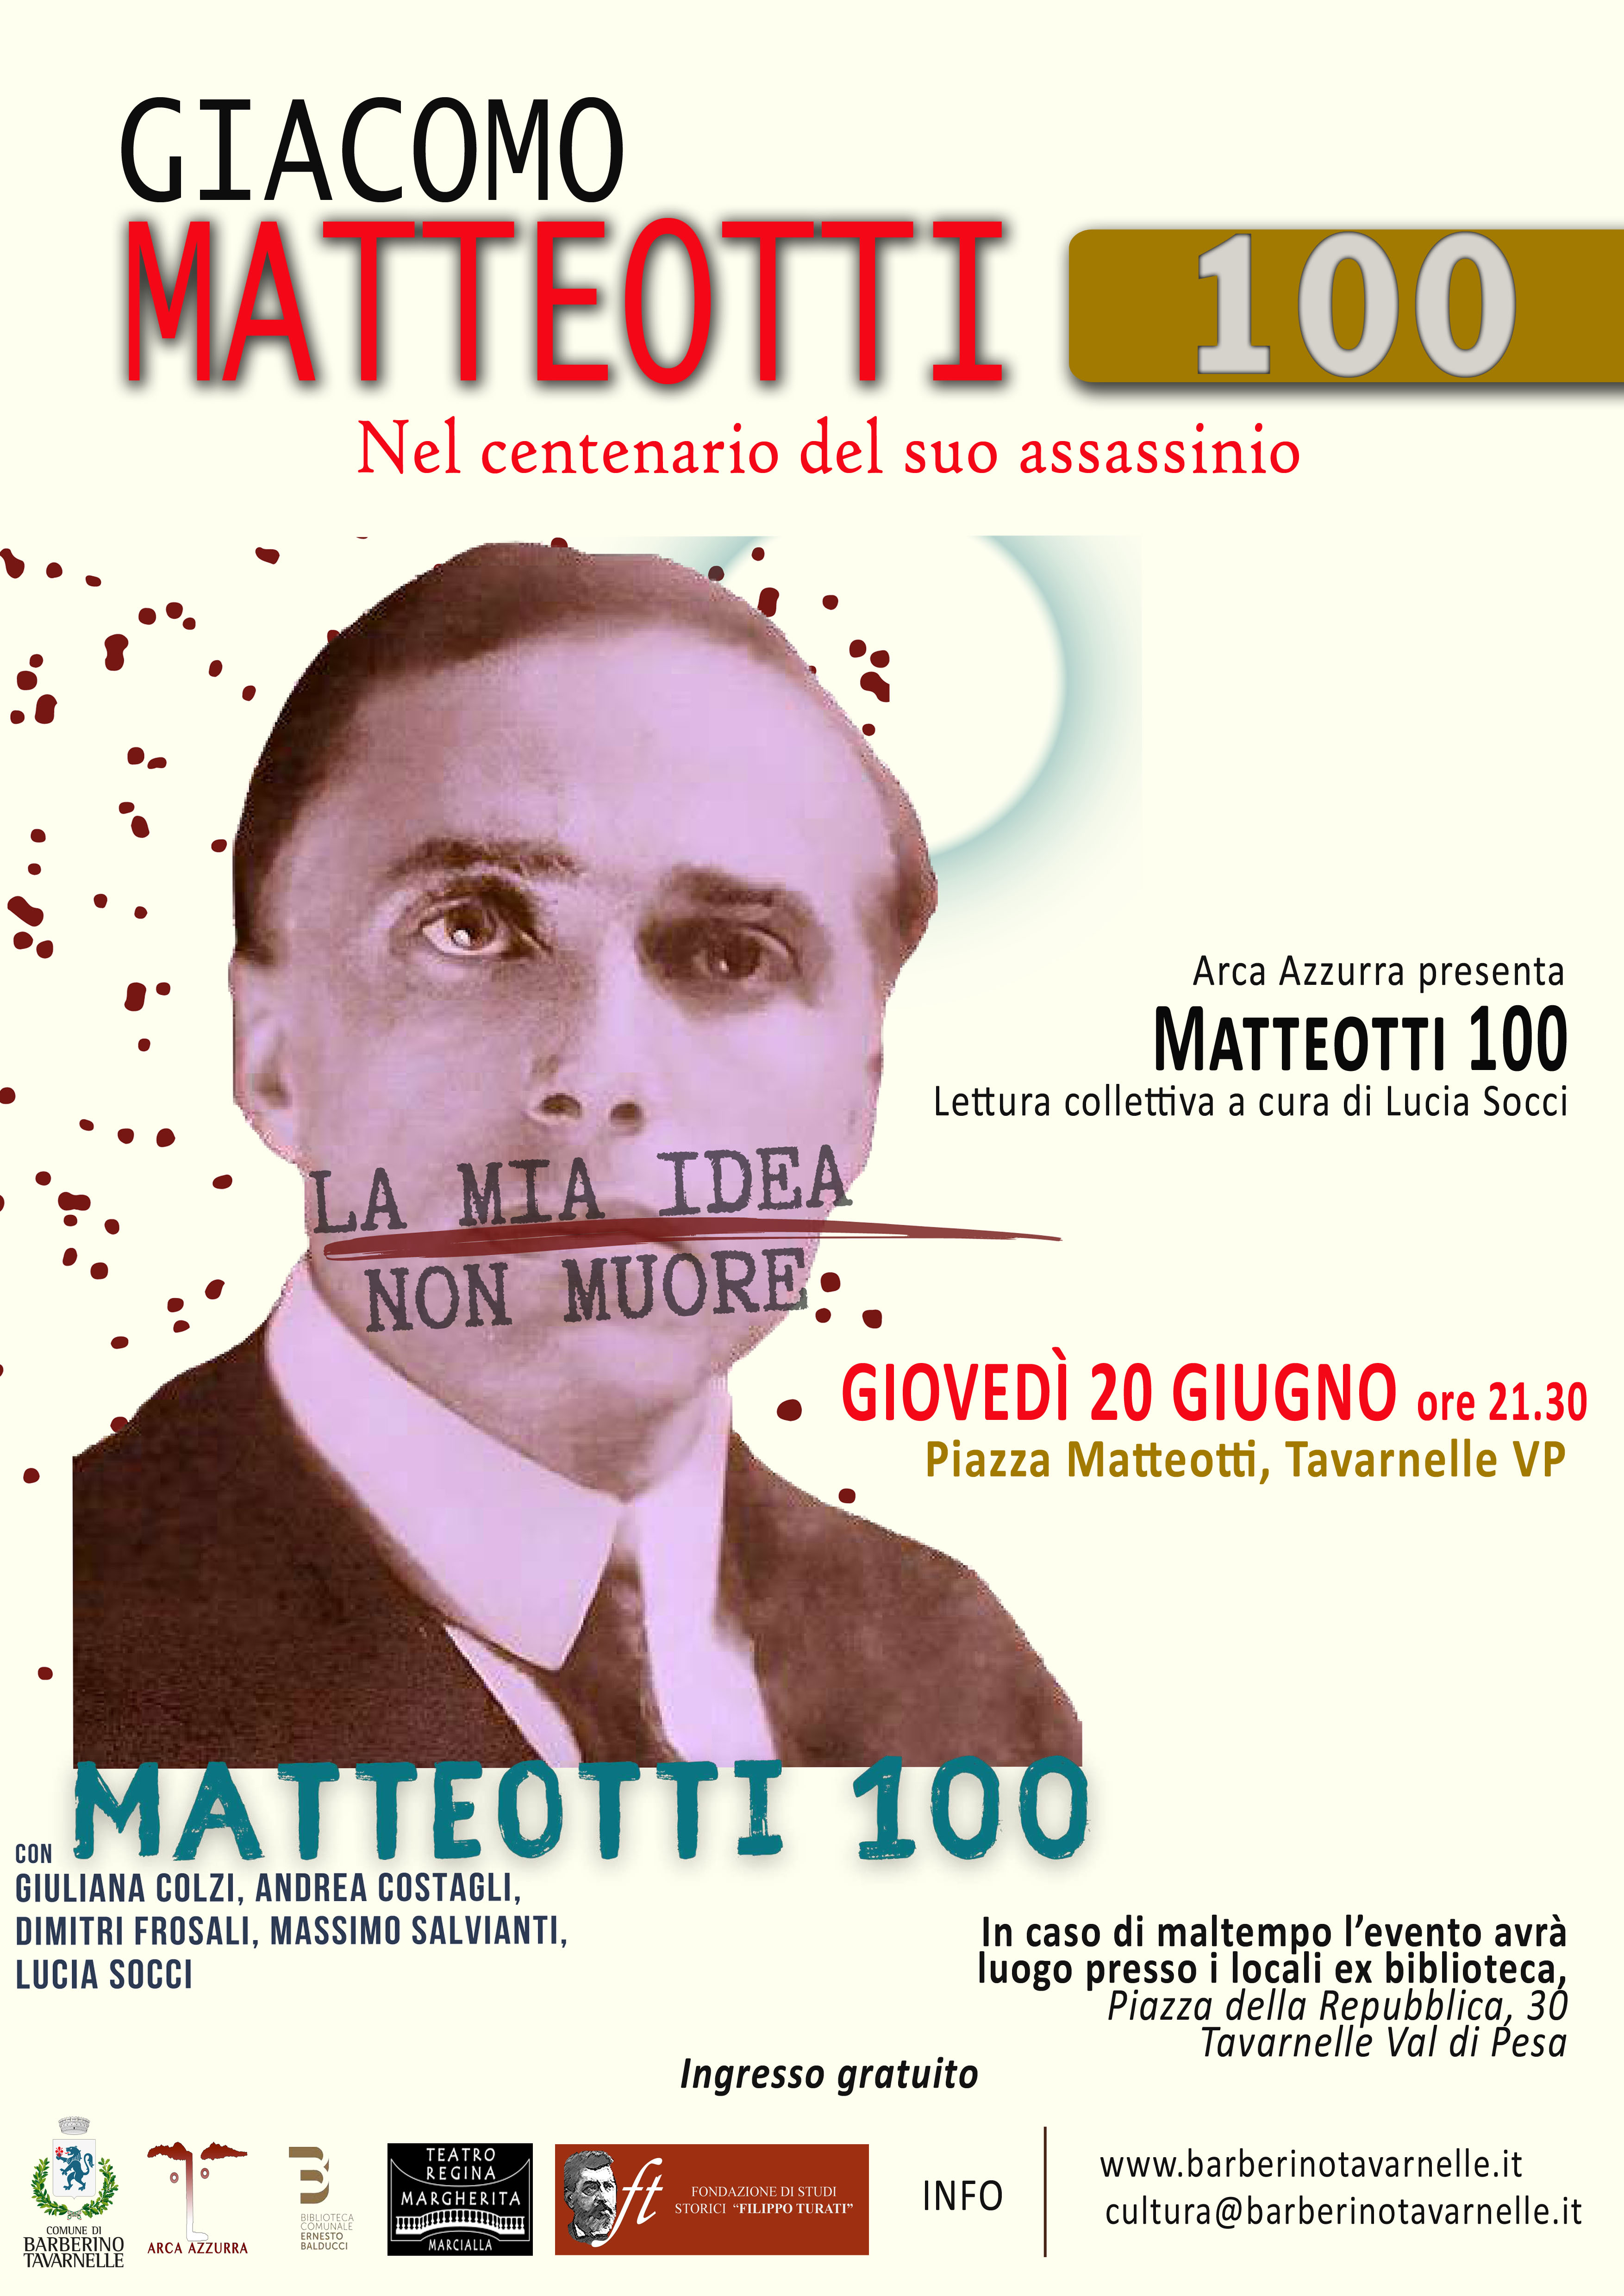 Matteotti 100